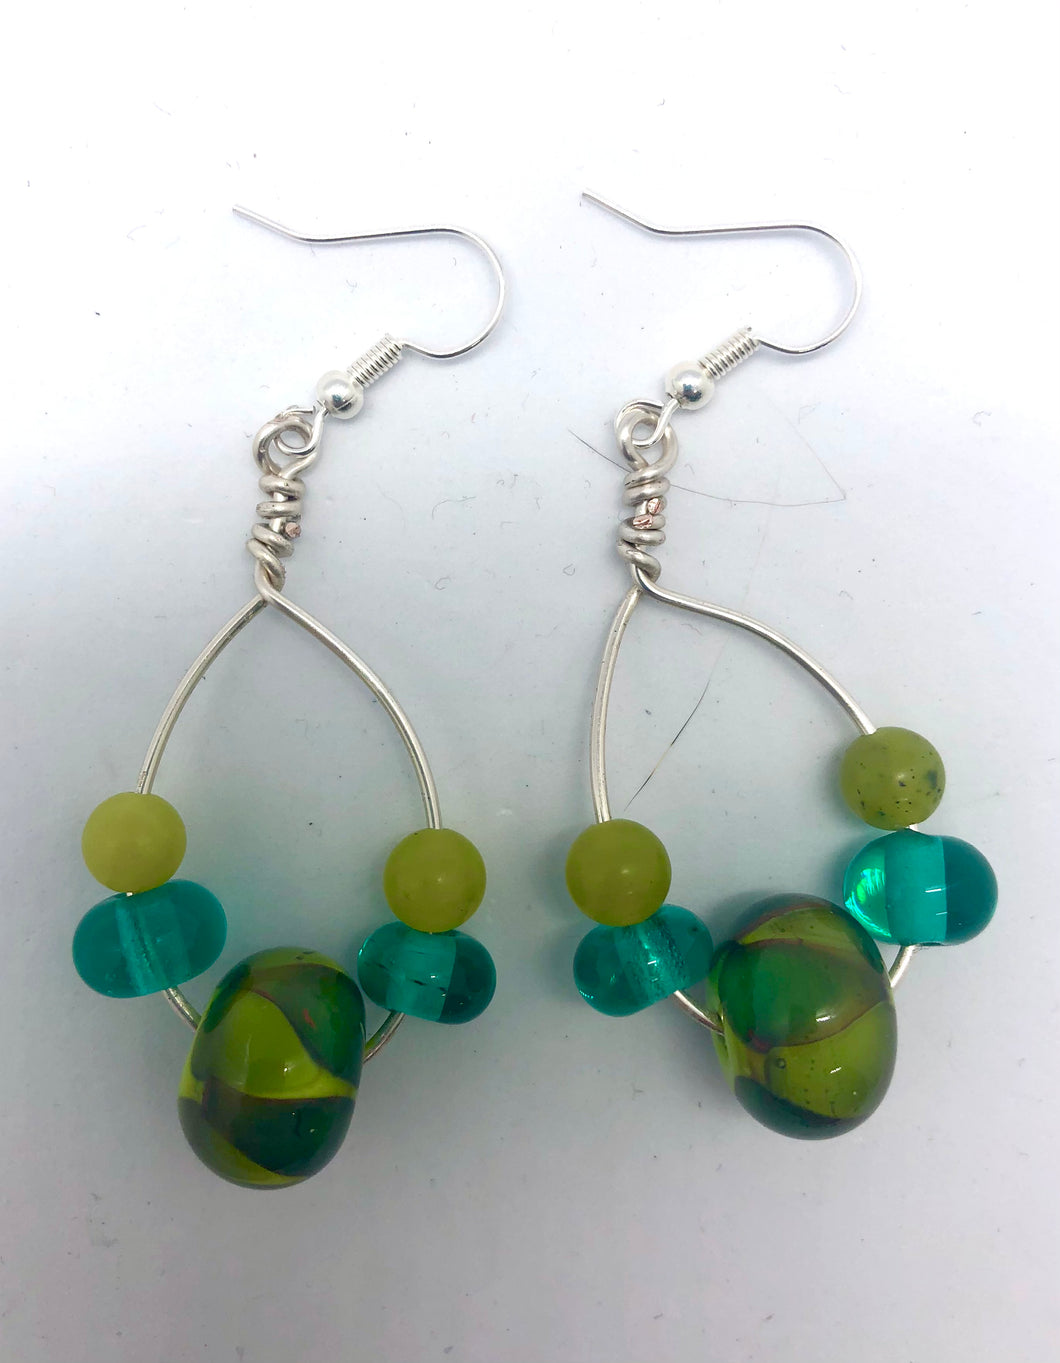 Loop Earrings in green and teal- Lampwork Glass Bead Earrings